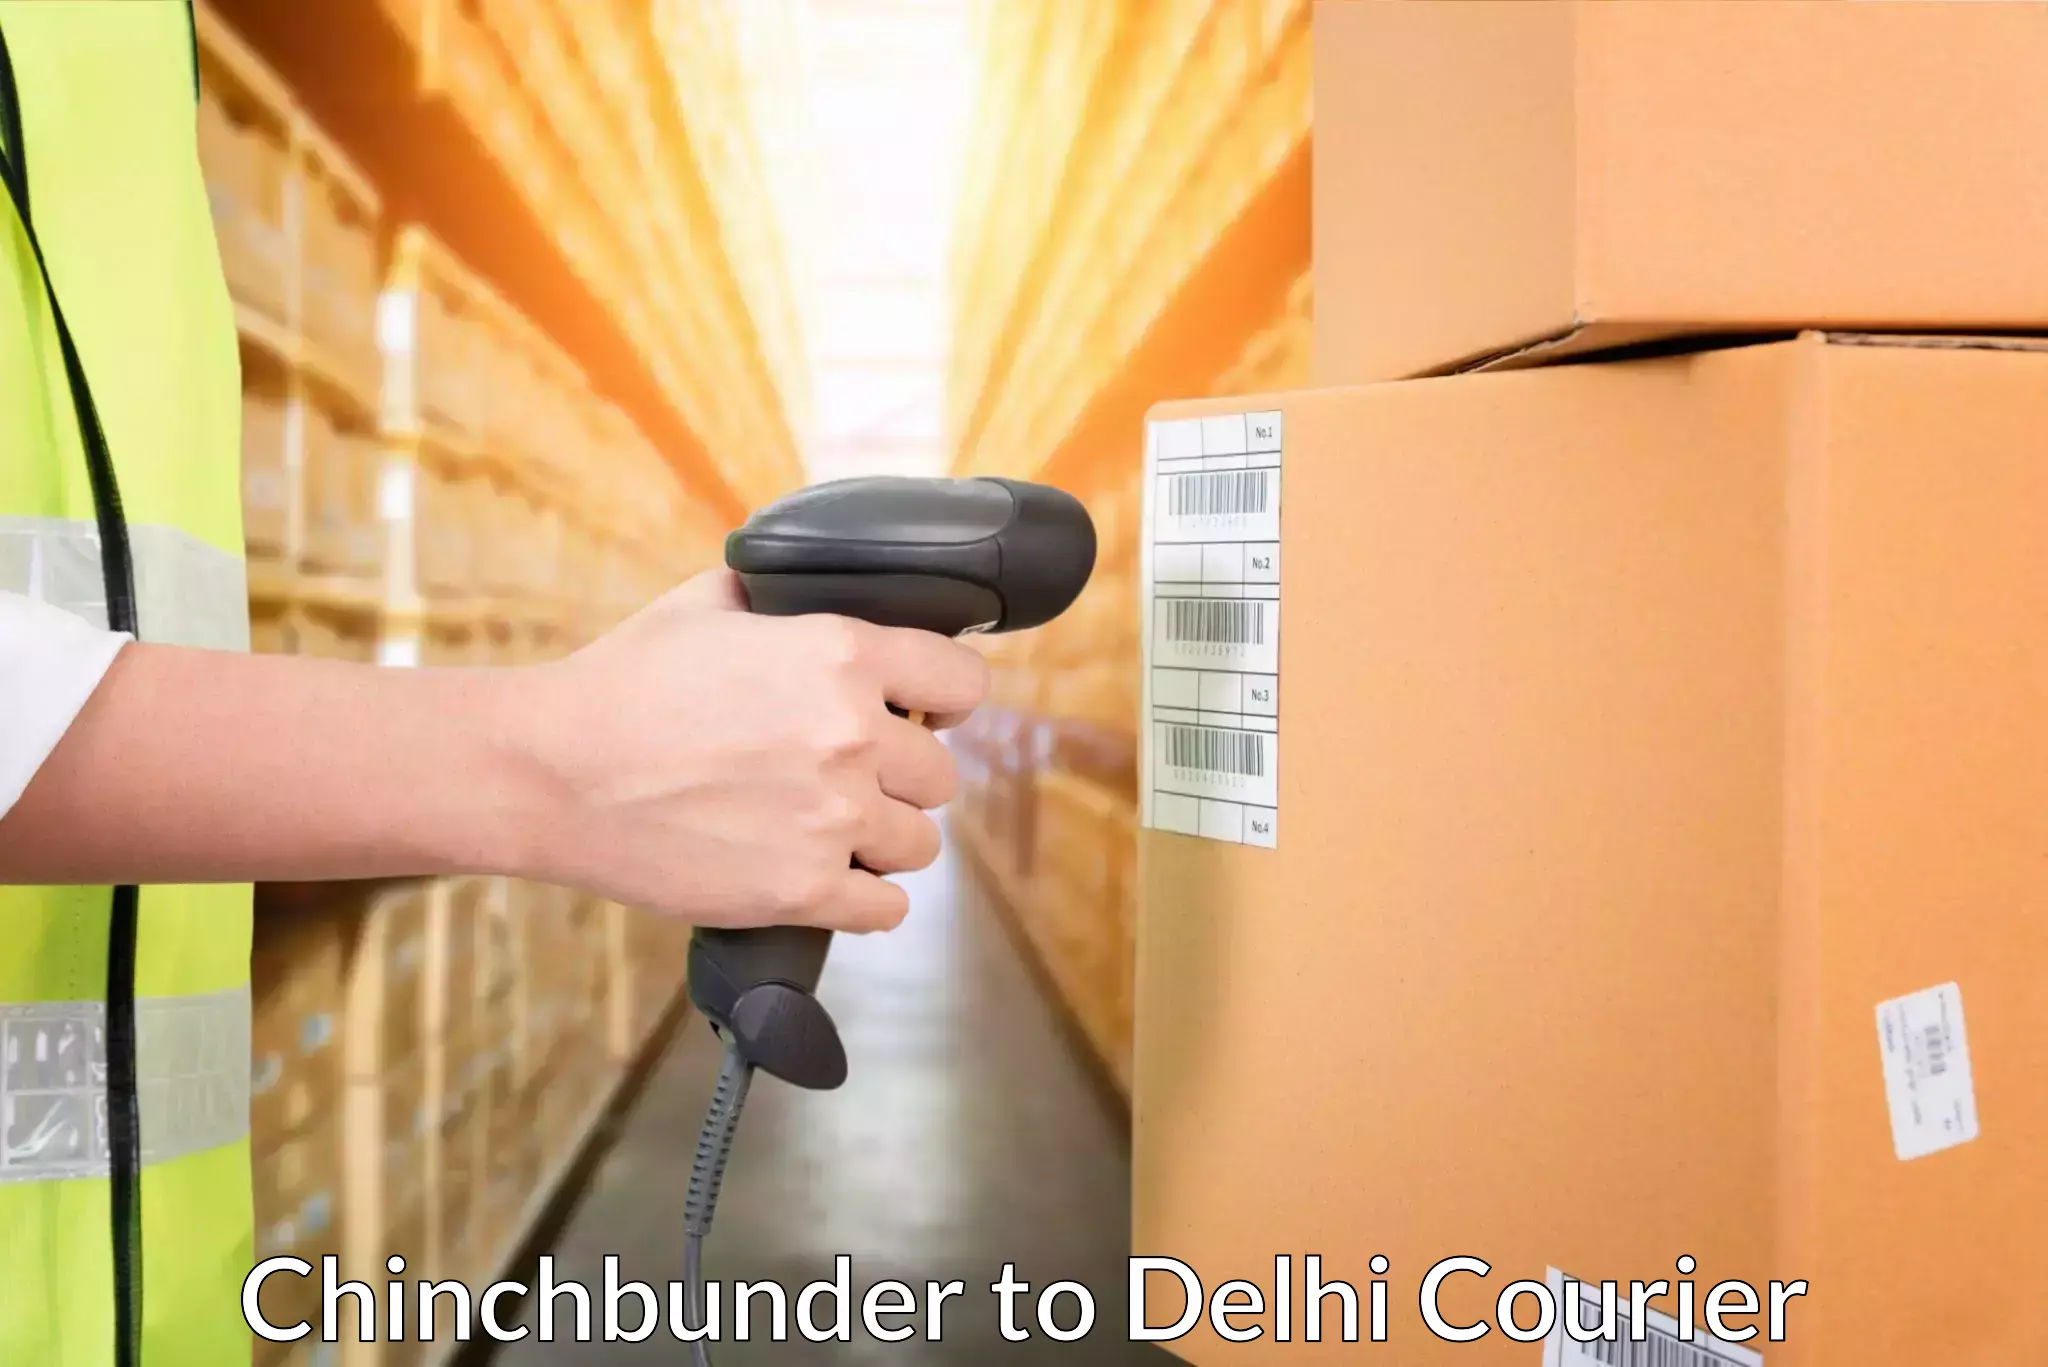 Urban courier service Chinchbunder to IIT Delhi